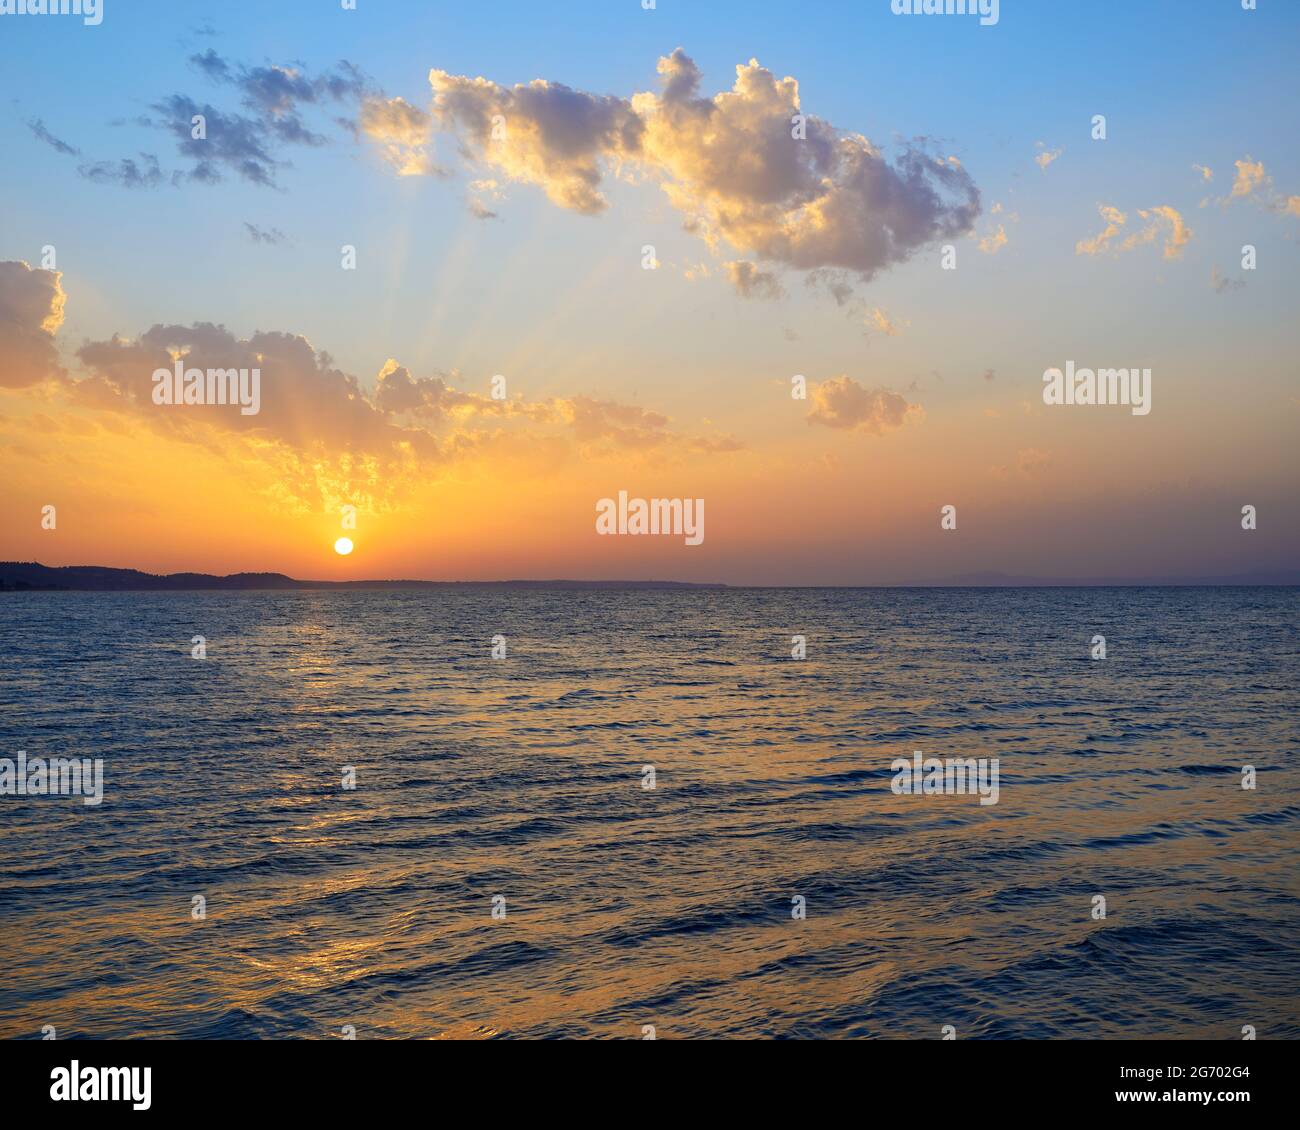 Coucher de soleil vue sur la mer Égée, Kassandra, Halkidiki, Grèce Banque D'Images